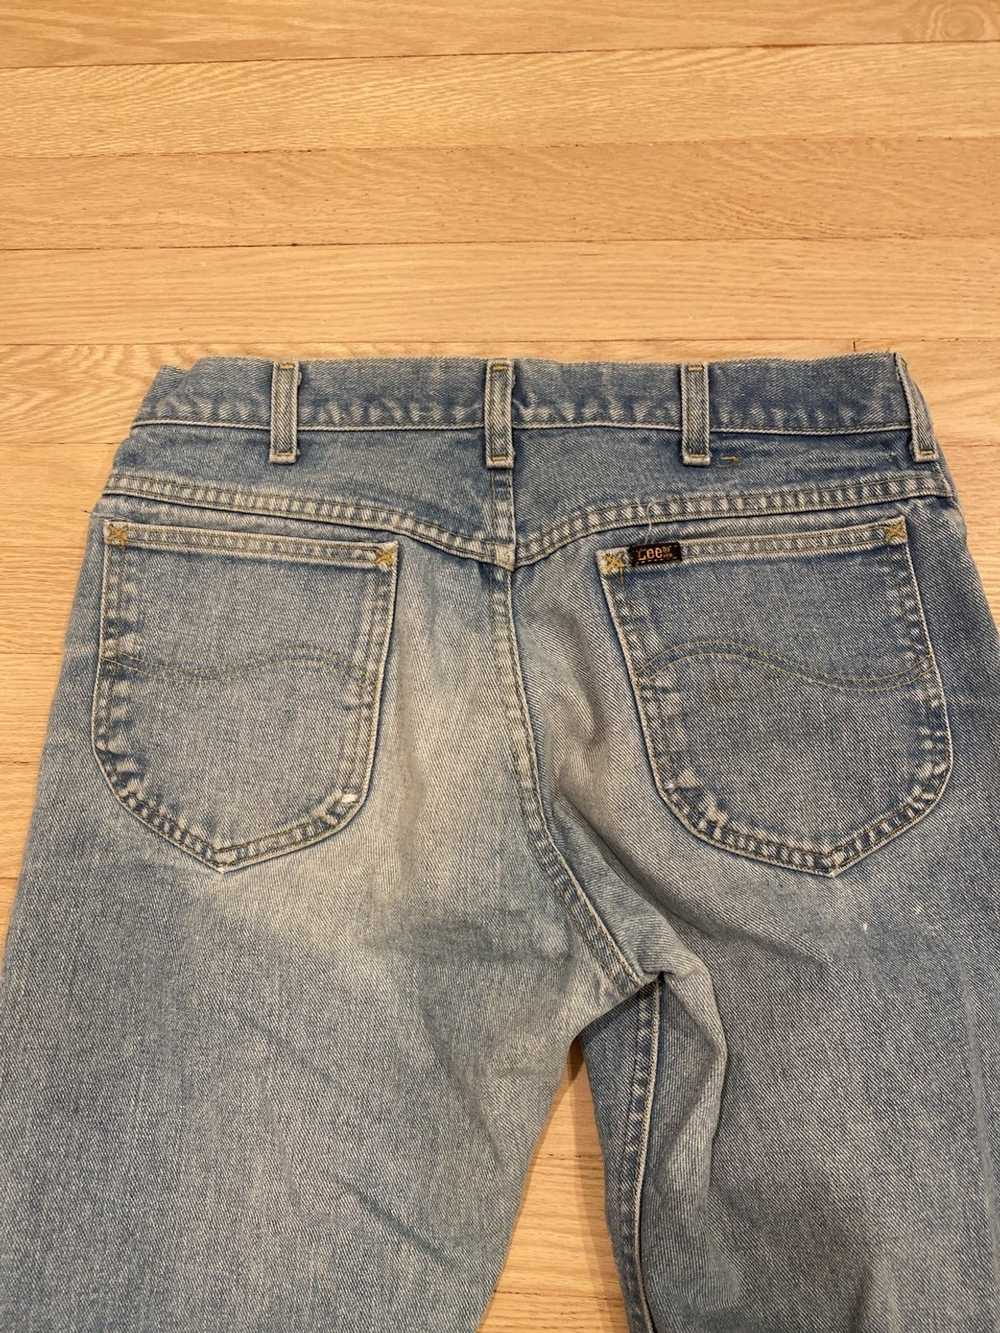 Lee Vintage Lee Jeans - image 4